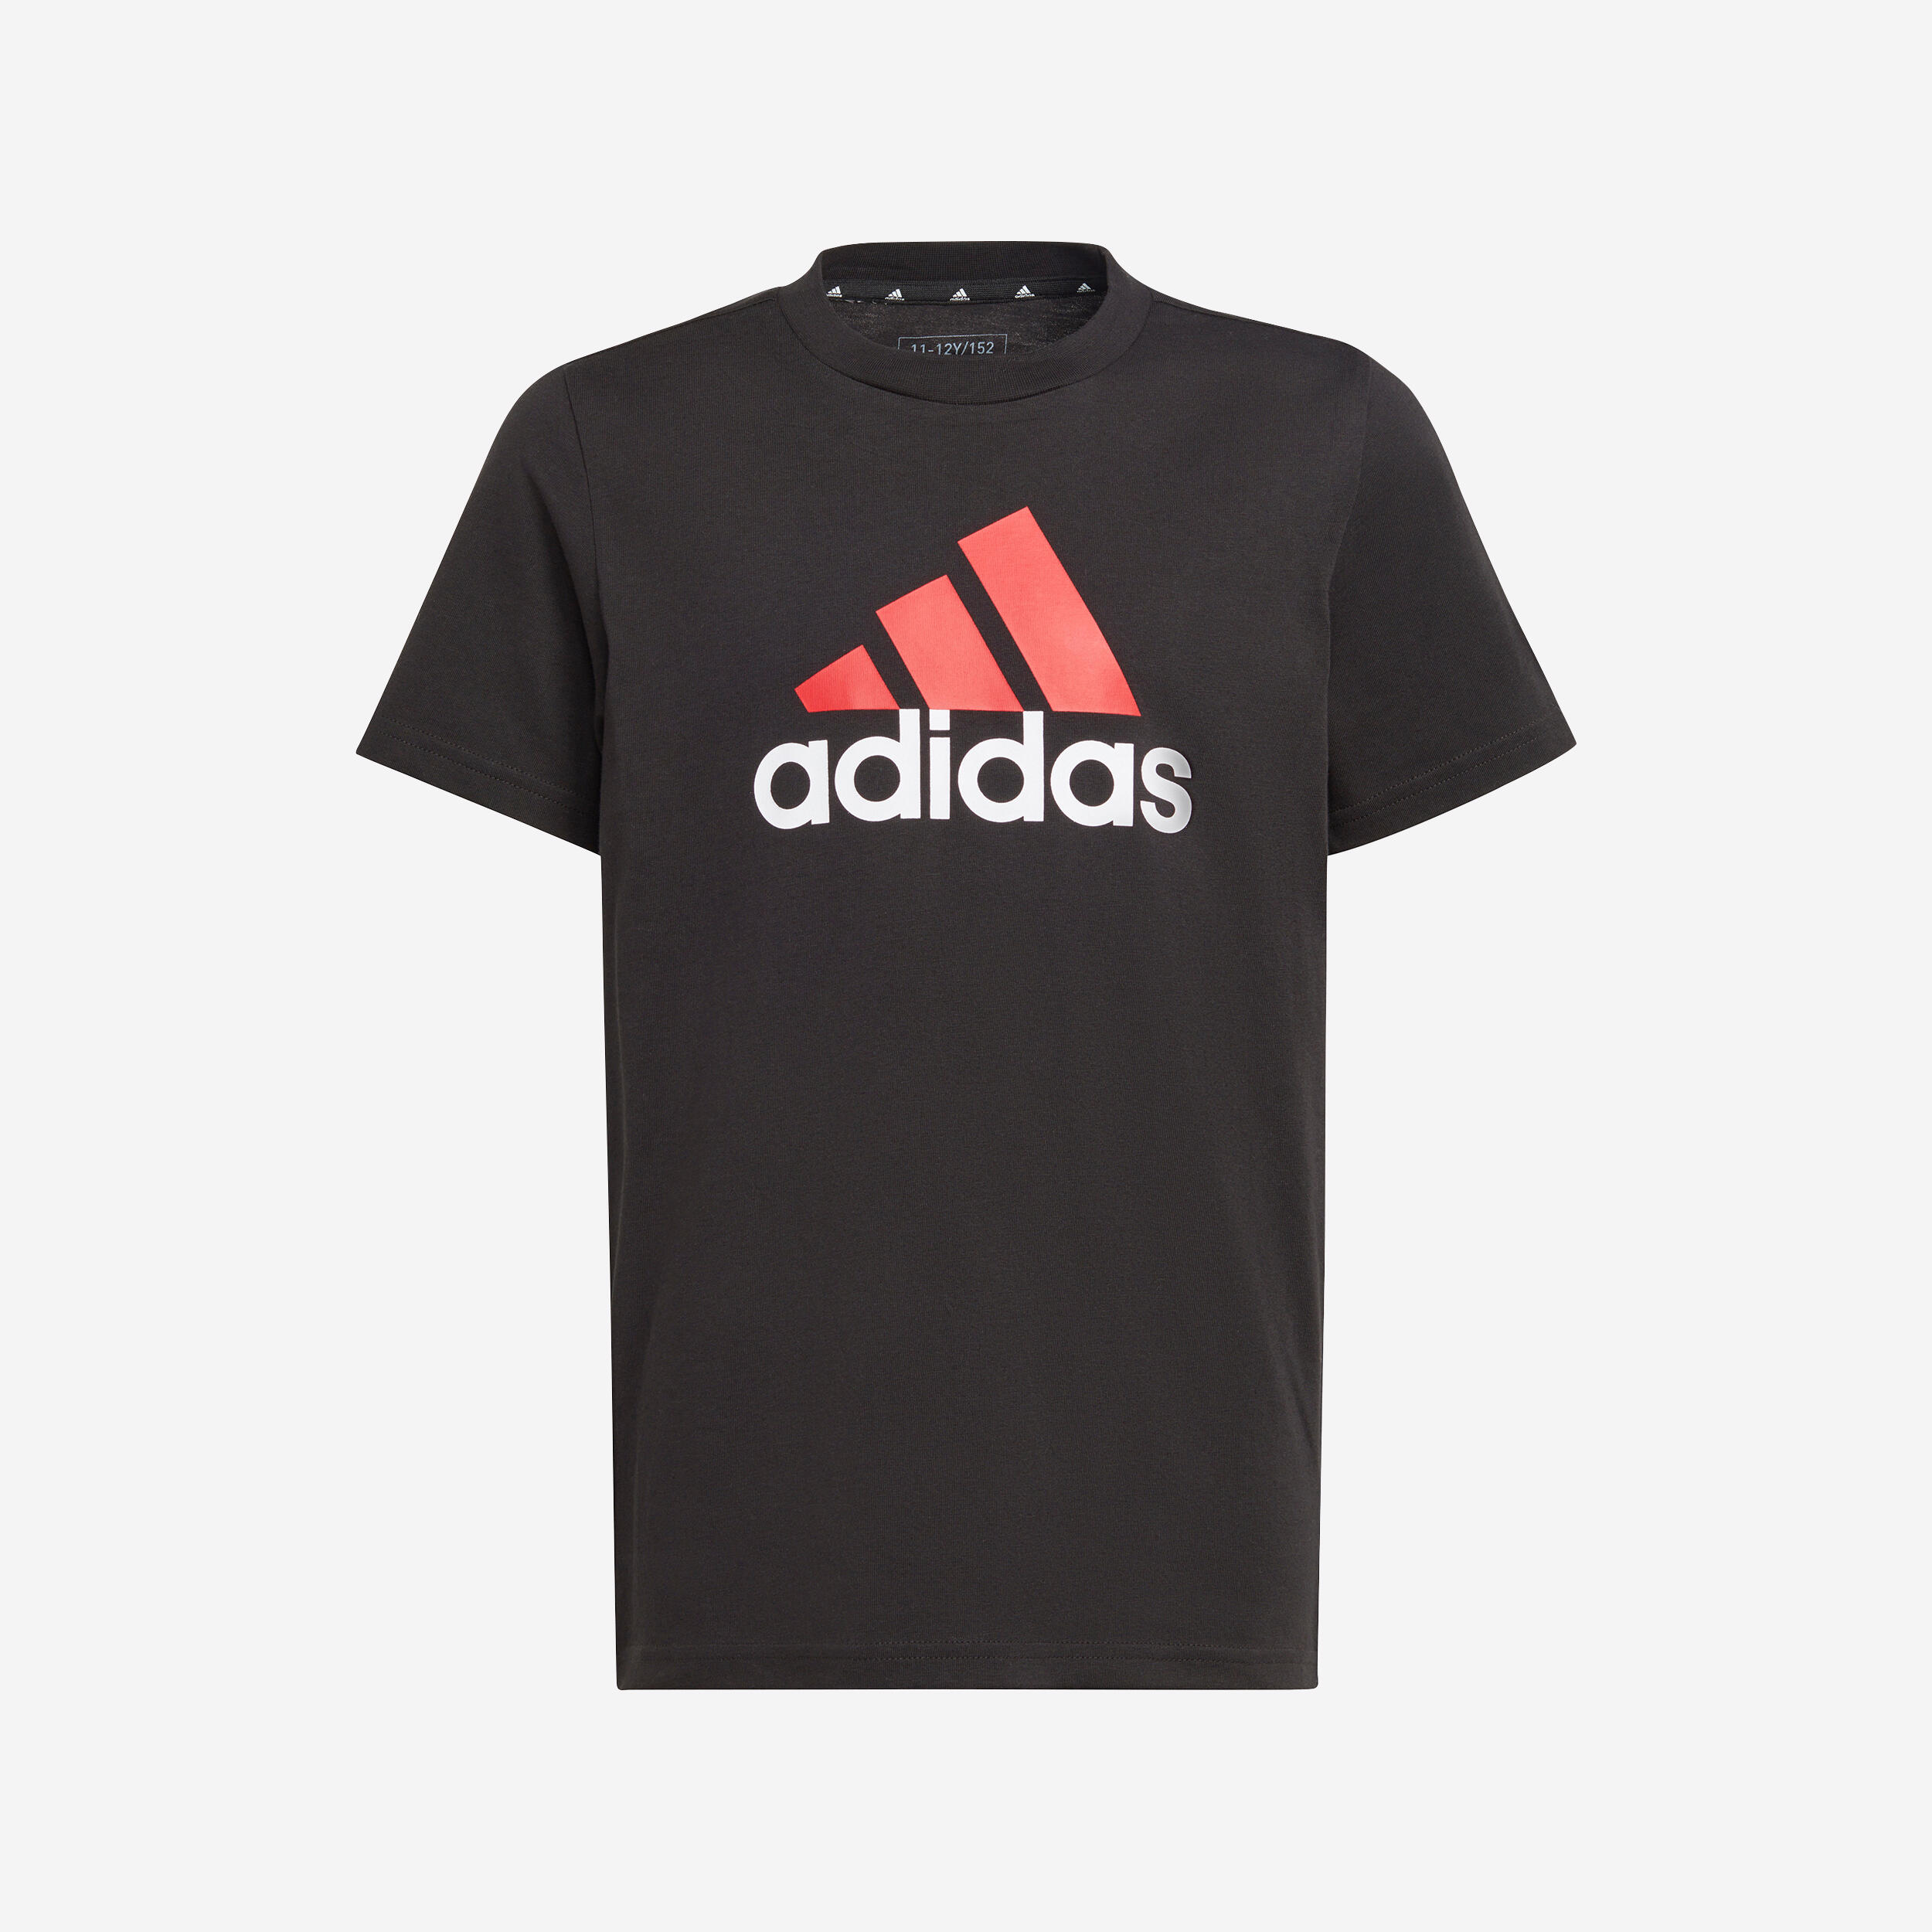 ADIDAS Kids' T-Shirt - Black/Red Logo